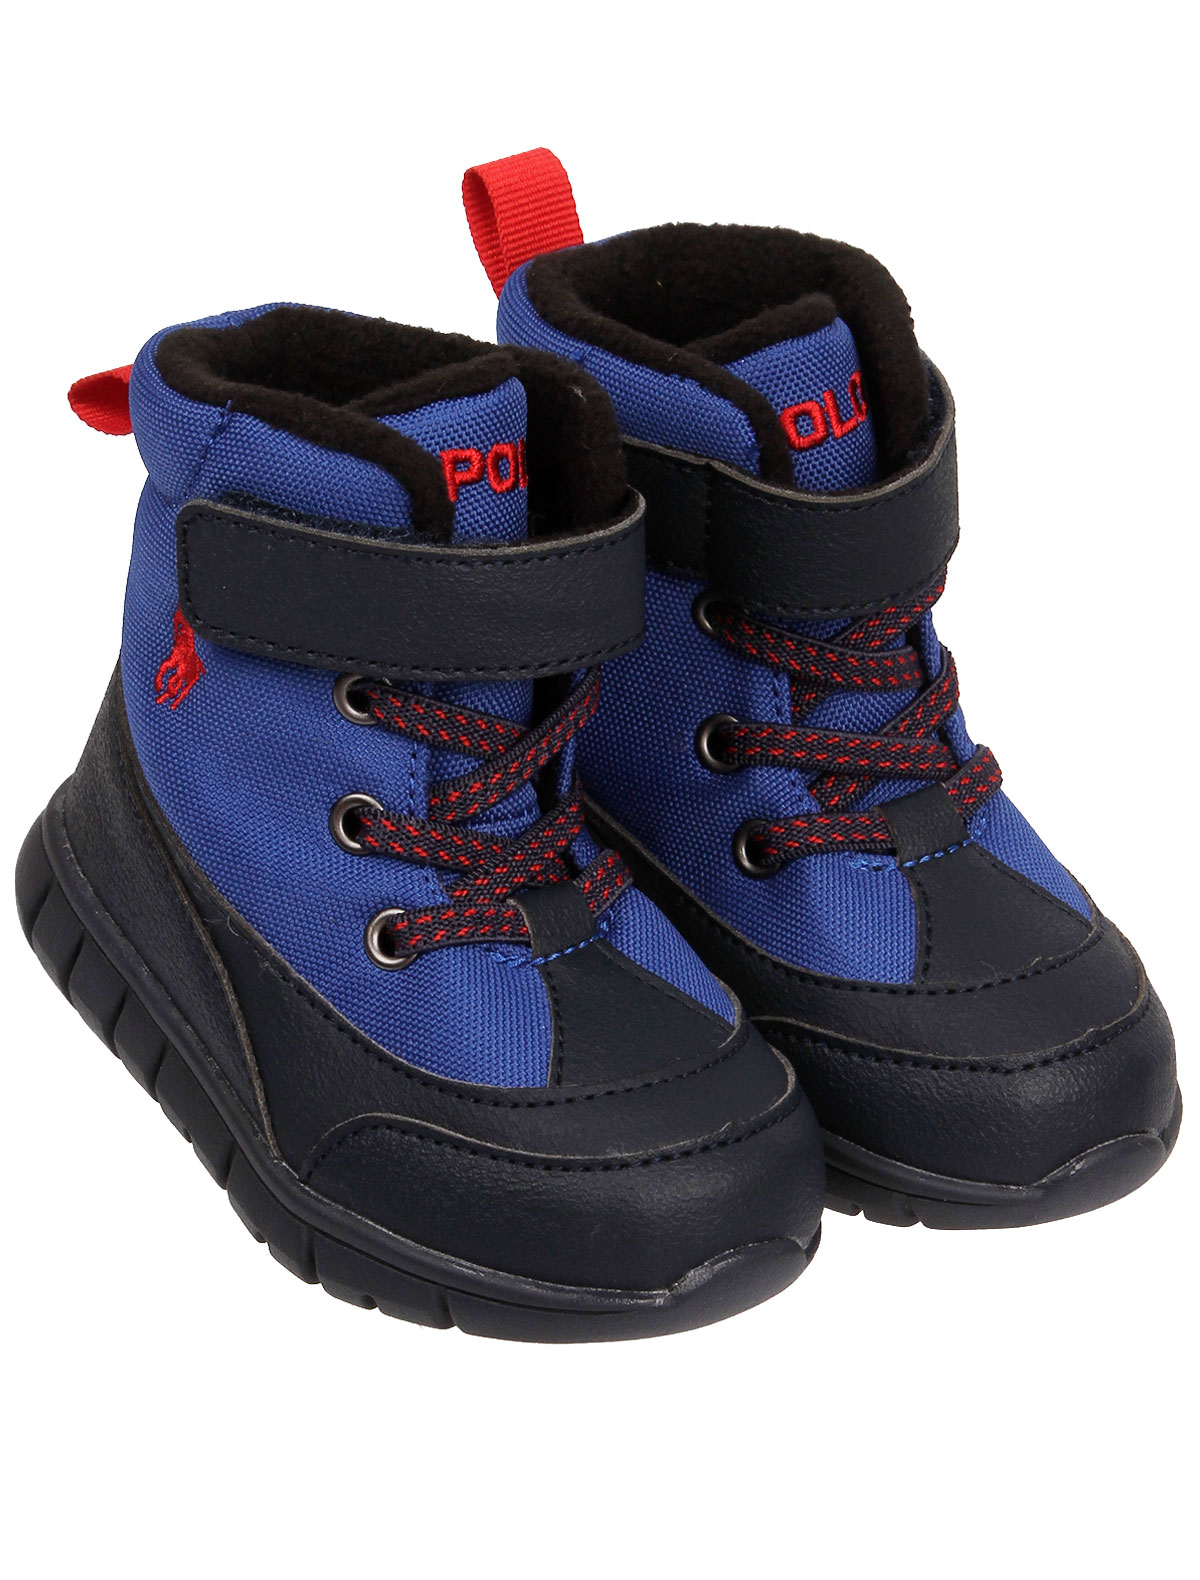 Ботинки Ralph Lauren 2347137, цвет синий, размер 20